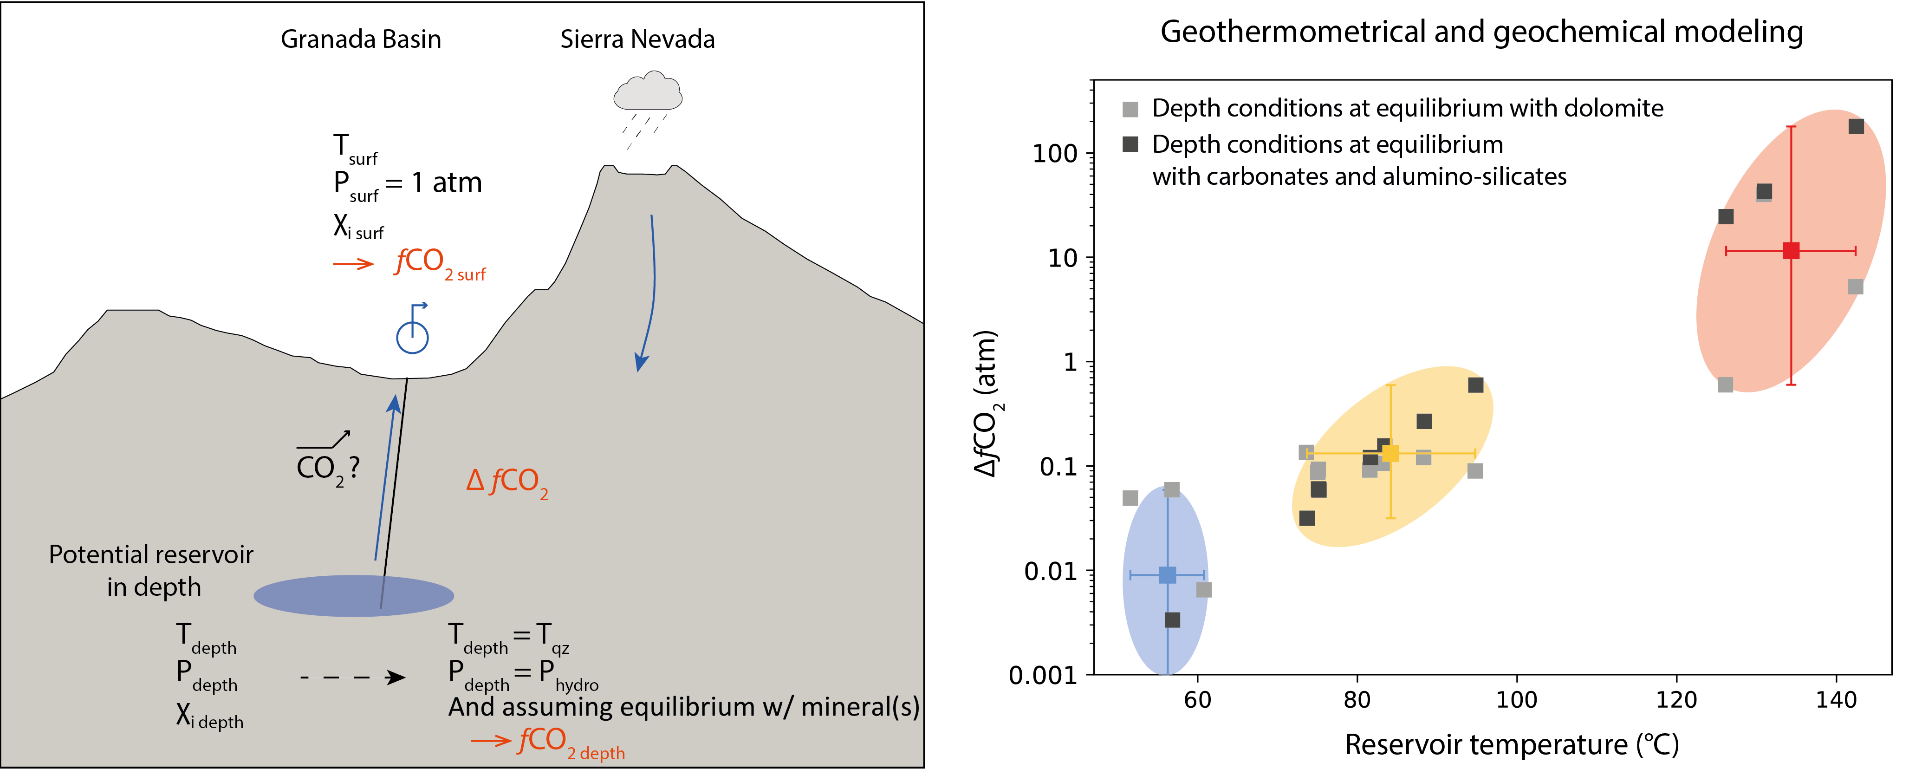 Représentation schématique et graphique des modélisations géothermiques et géochimiques réalisées sur les sources thermales de la Cordillère Bétique